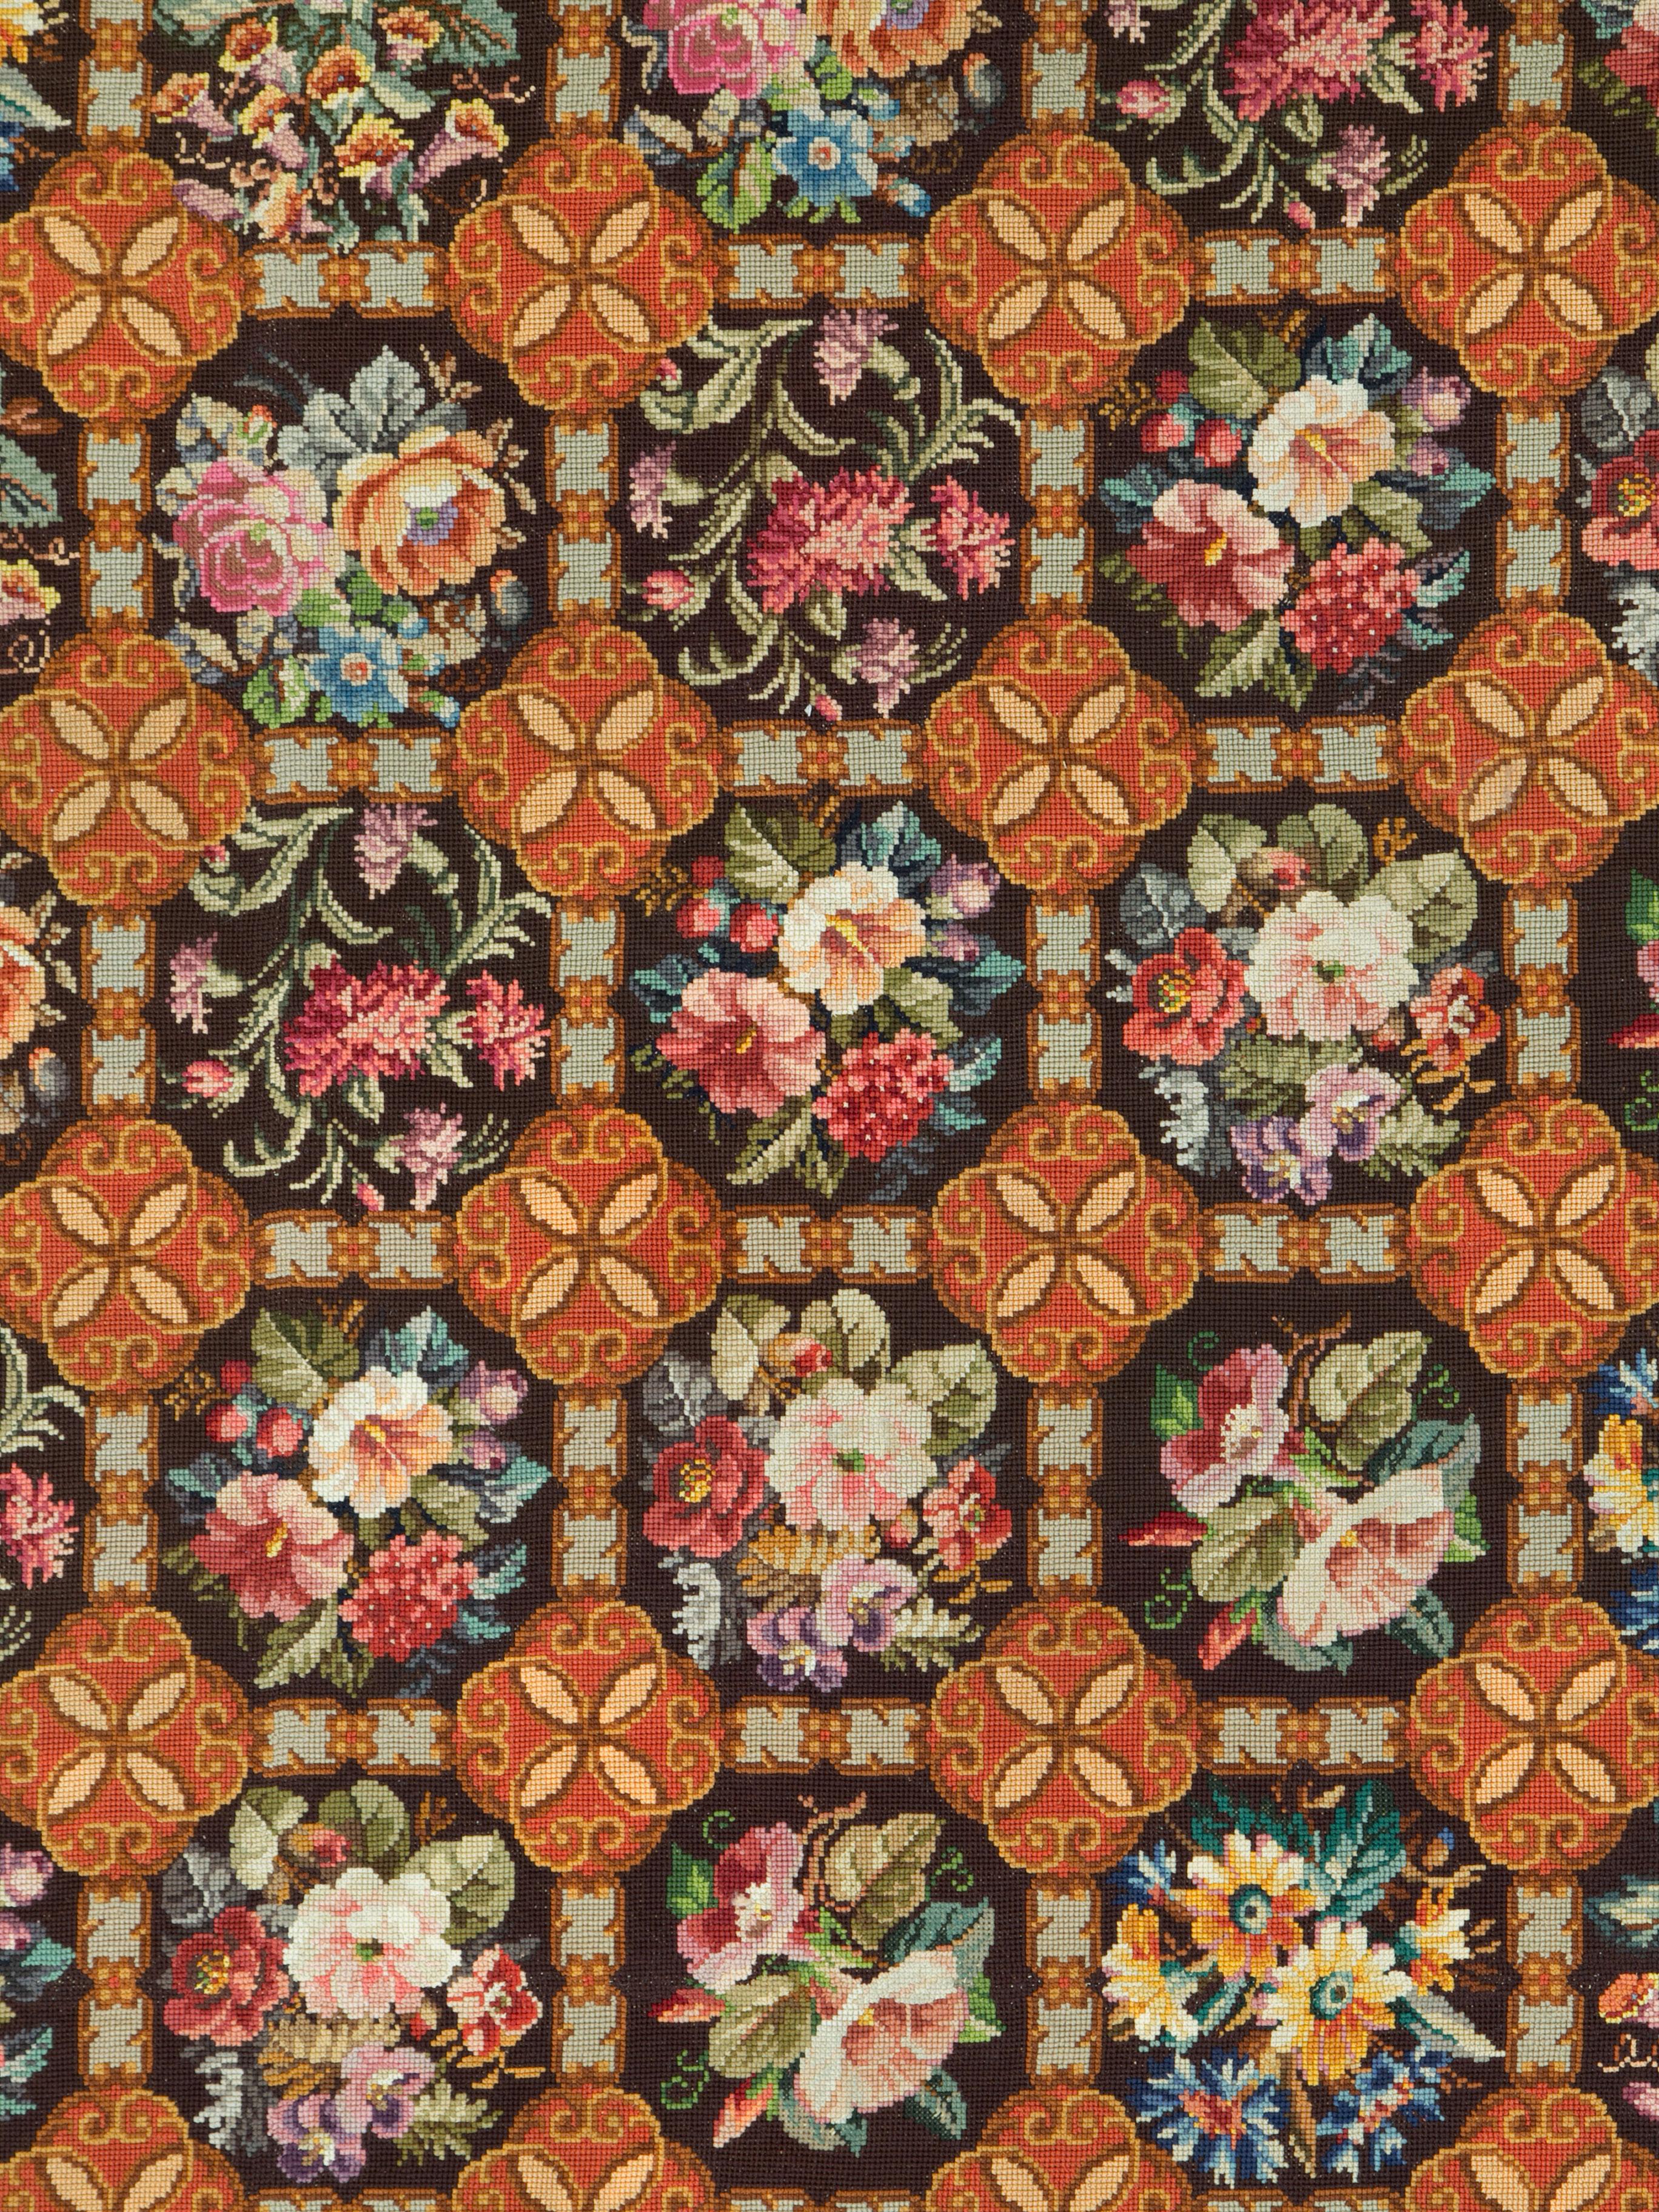 Ein antiker englischer Nadelteppich aus dem frühen 20. Jahrhundert.

Maße: 9' 3